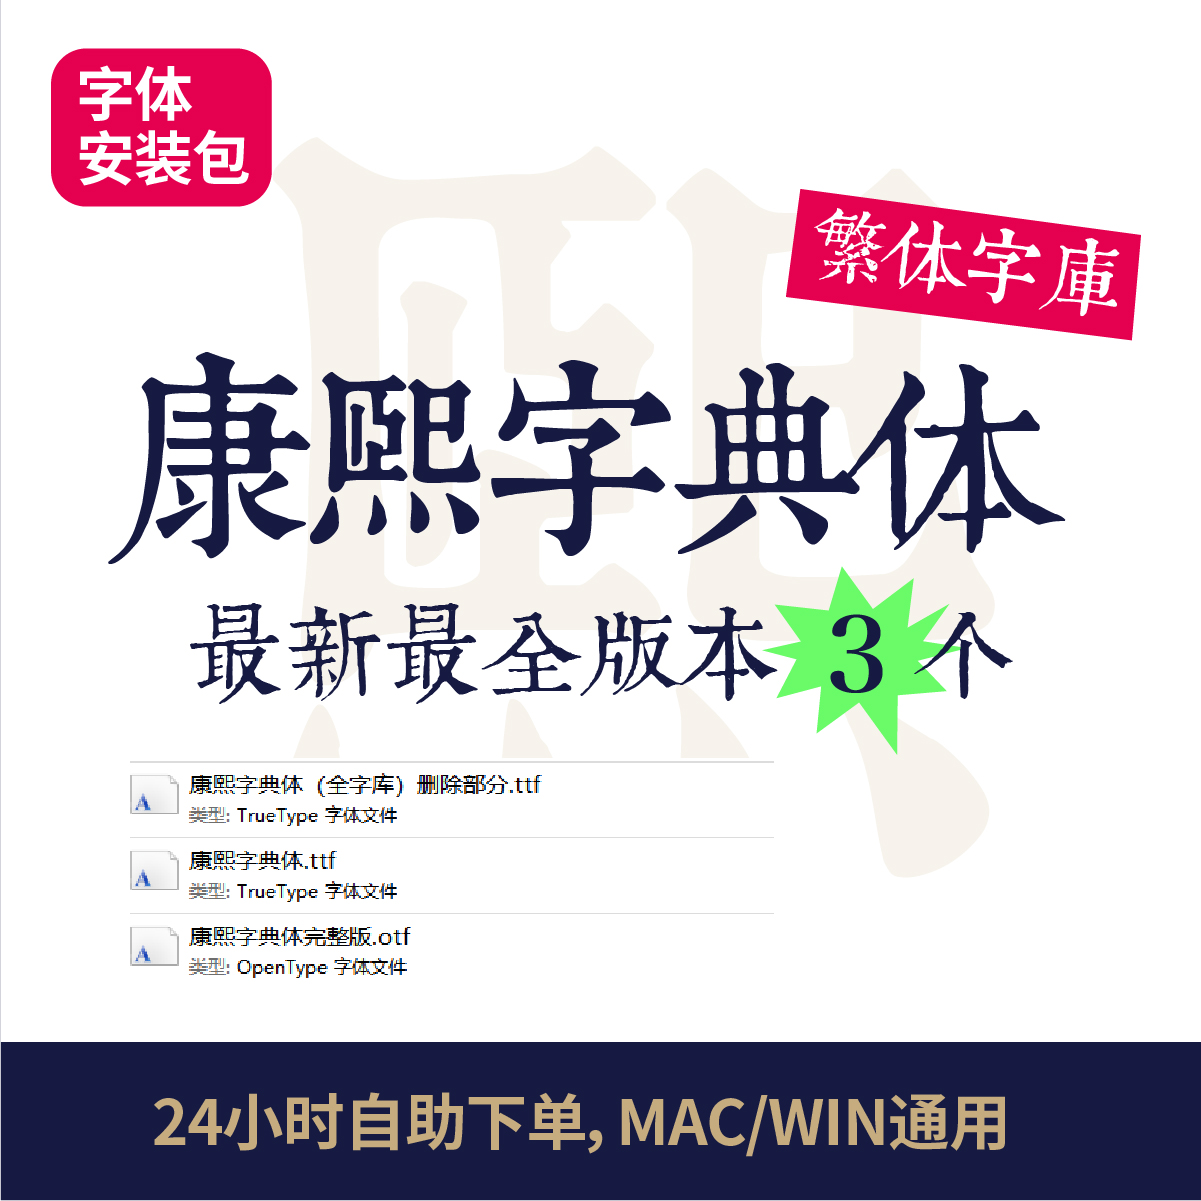 康熙字典体中文字体繁体最完整版官方正版PS/ai/MAC字体安装包67